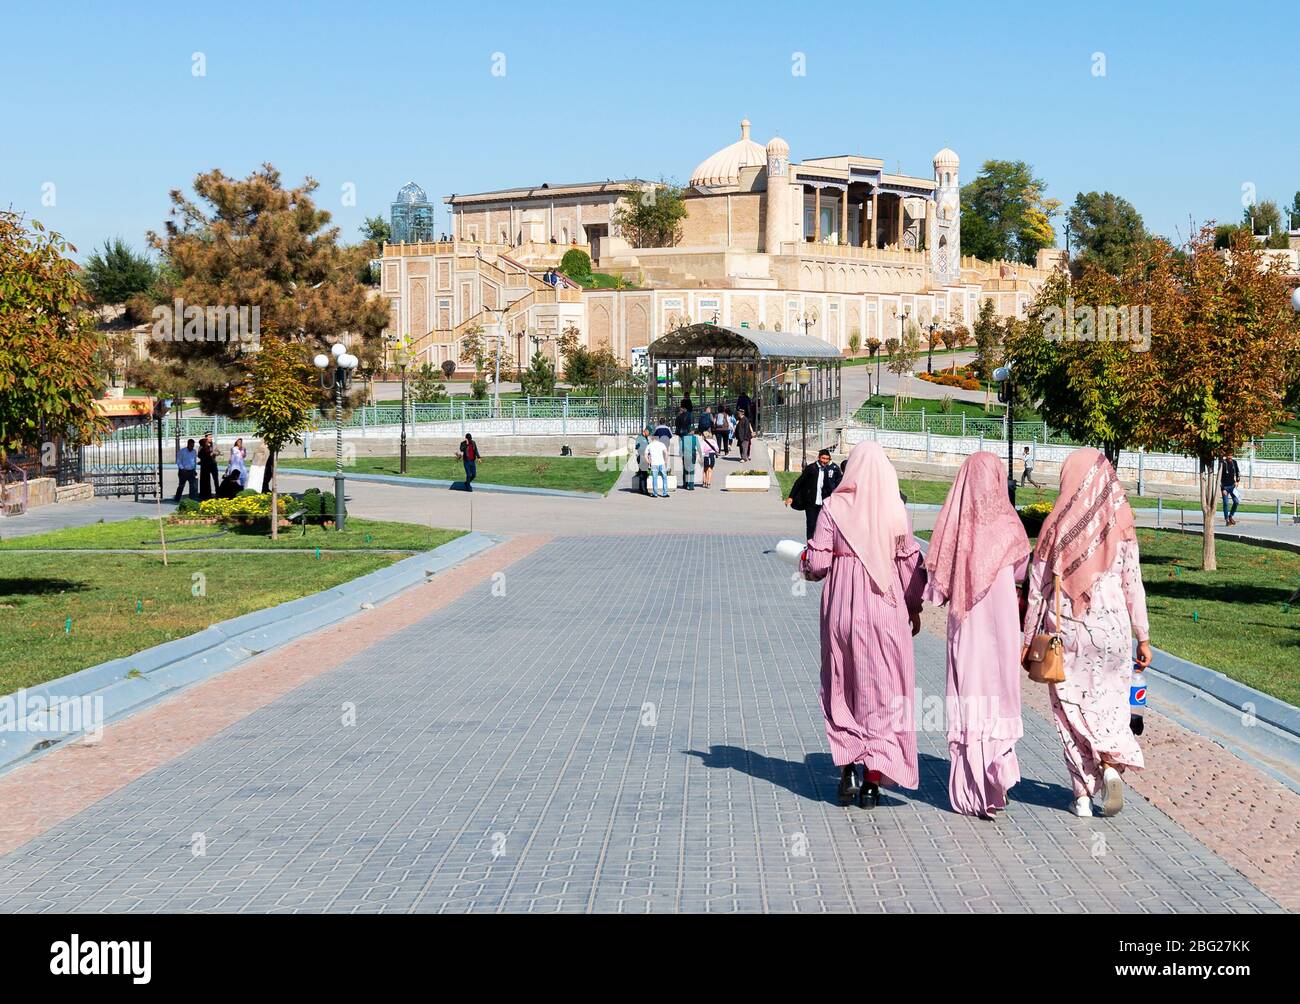 Grupo de mujeres musulmanas uzbekas que visten ropa tradicional como bufanda y vestido largo. Visión de la vida cotidiana en Samarkand, Uzbekistán. Foto de stock